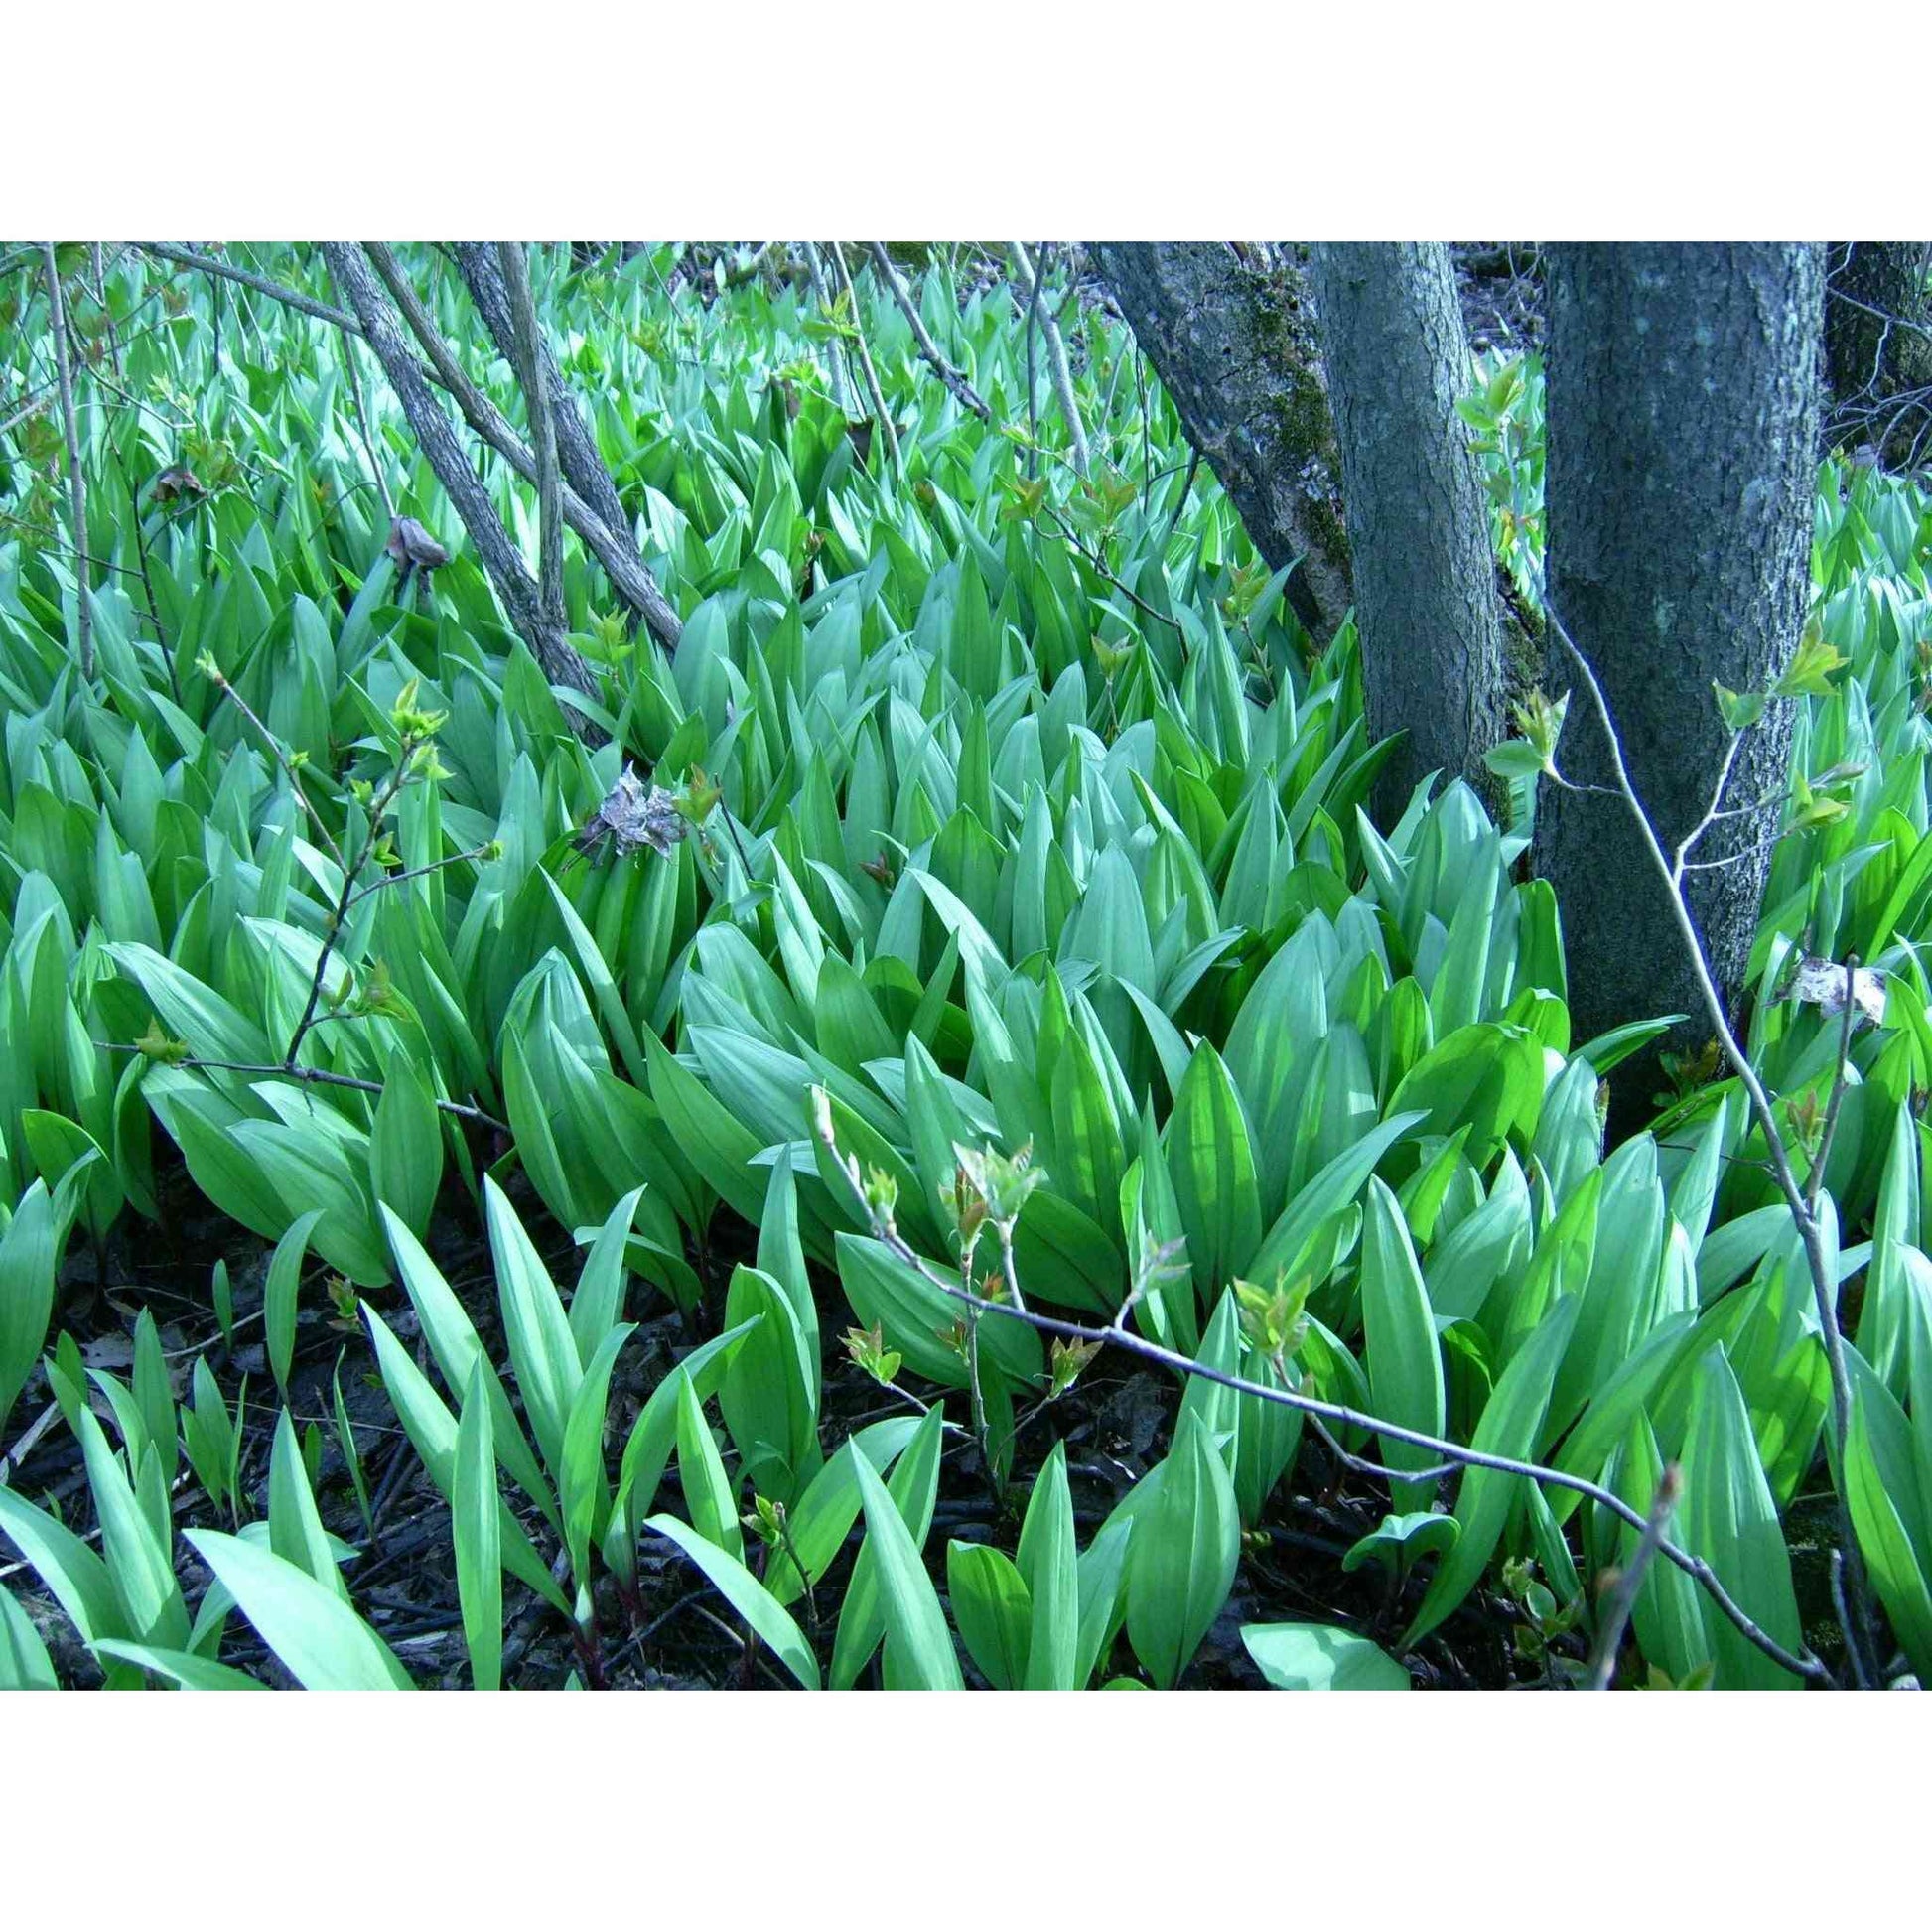 Allium tricoccum (Wild Leek/Ramps)  Natural Communities LLC